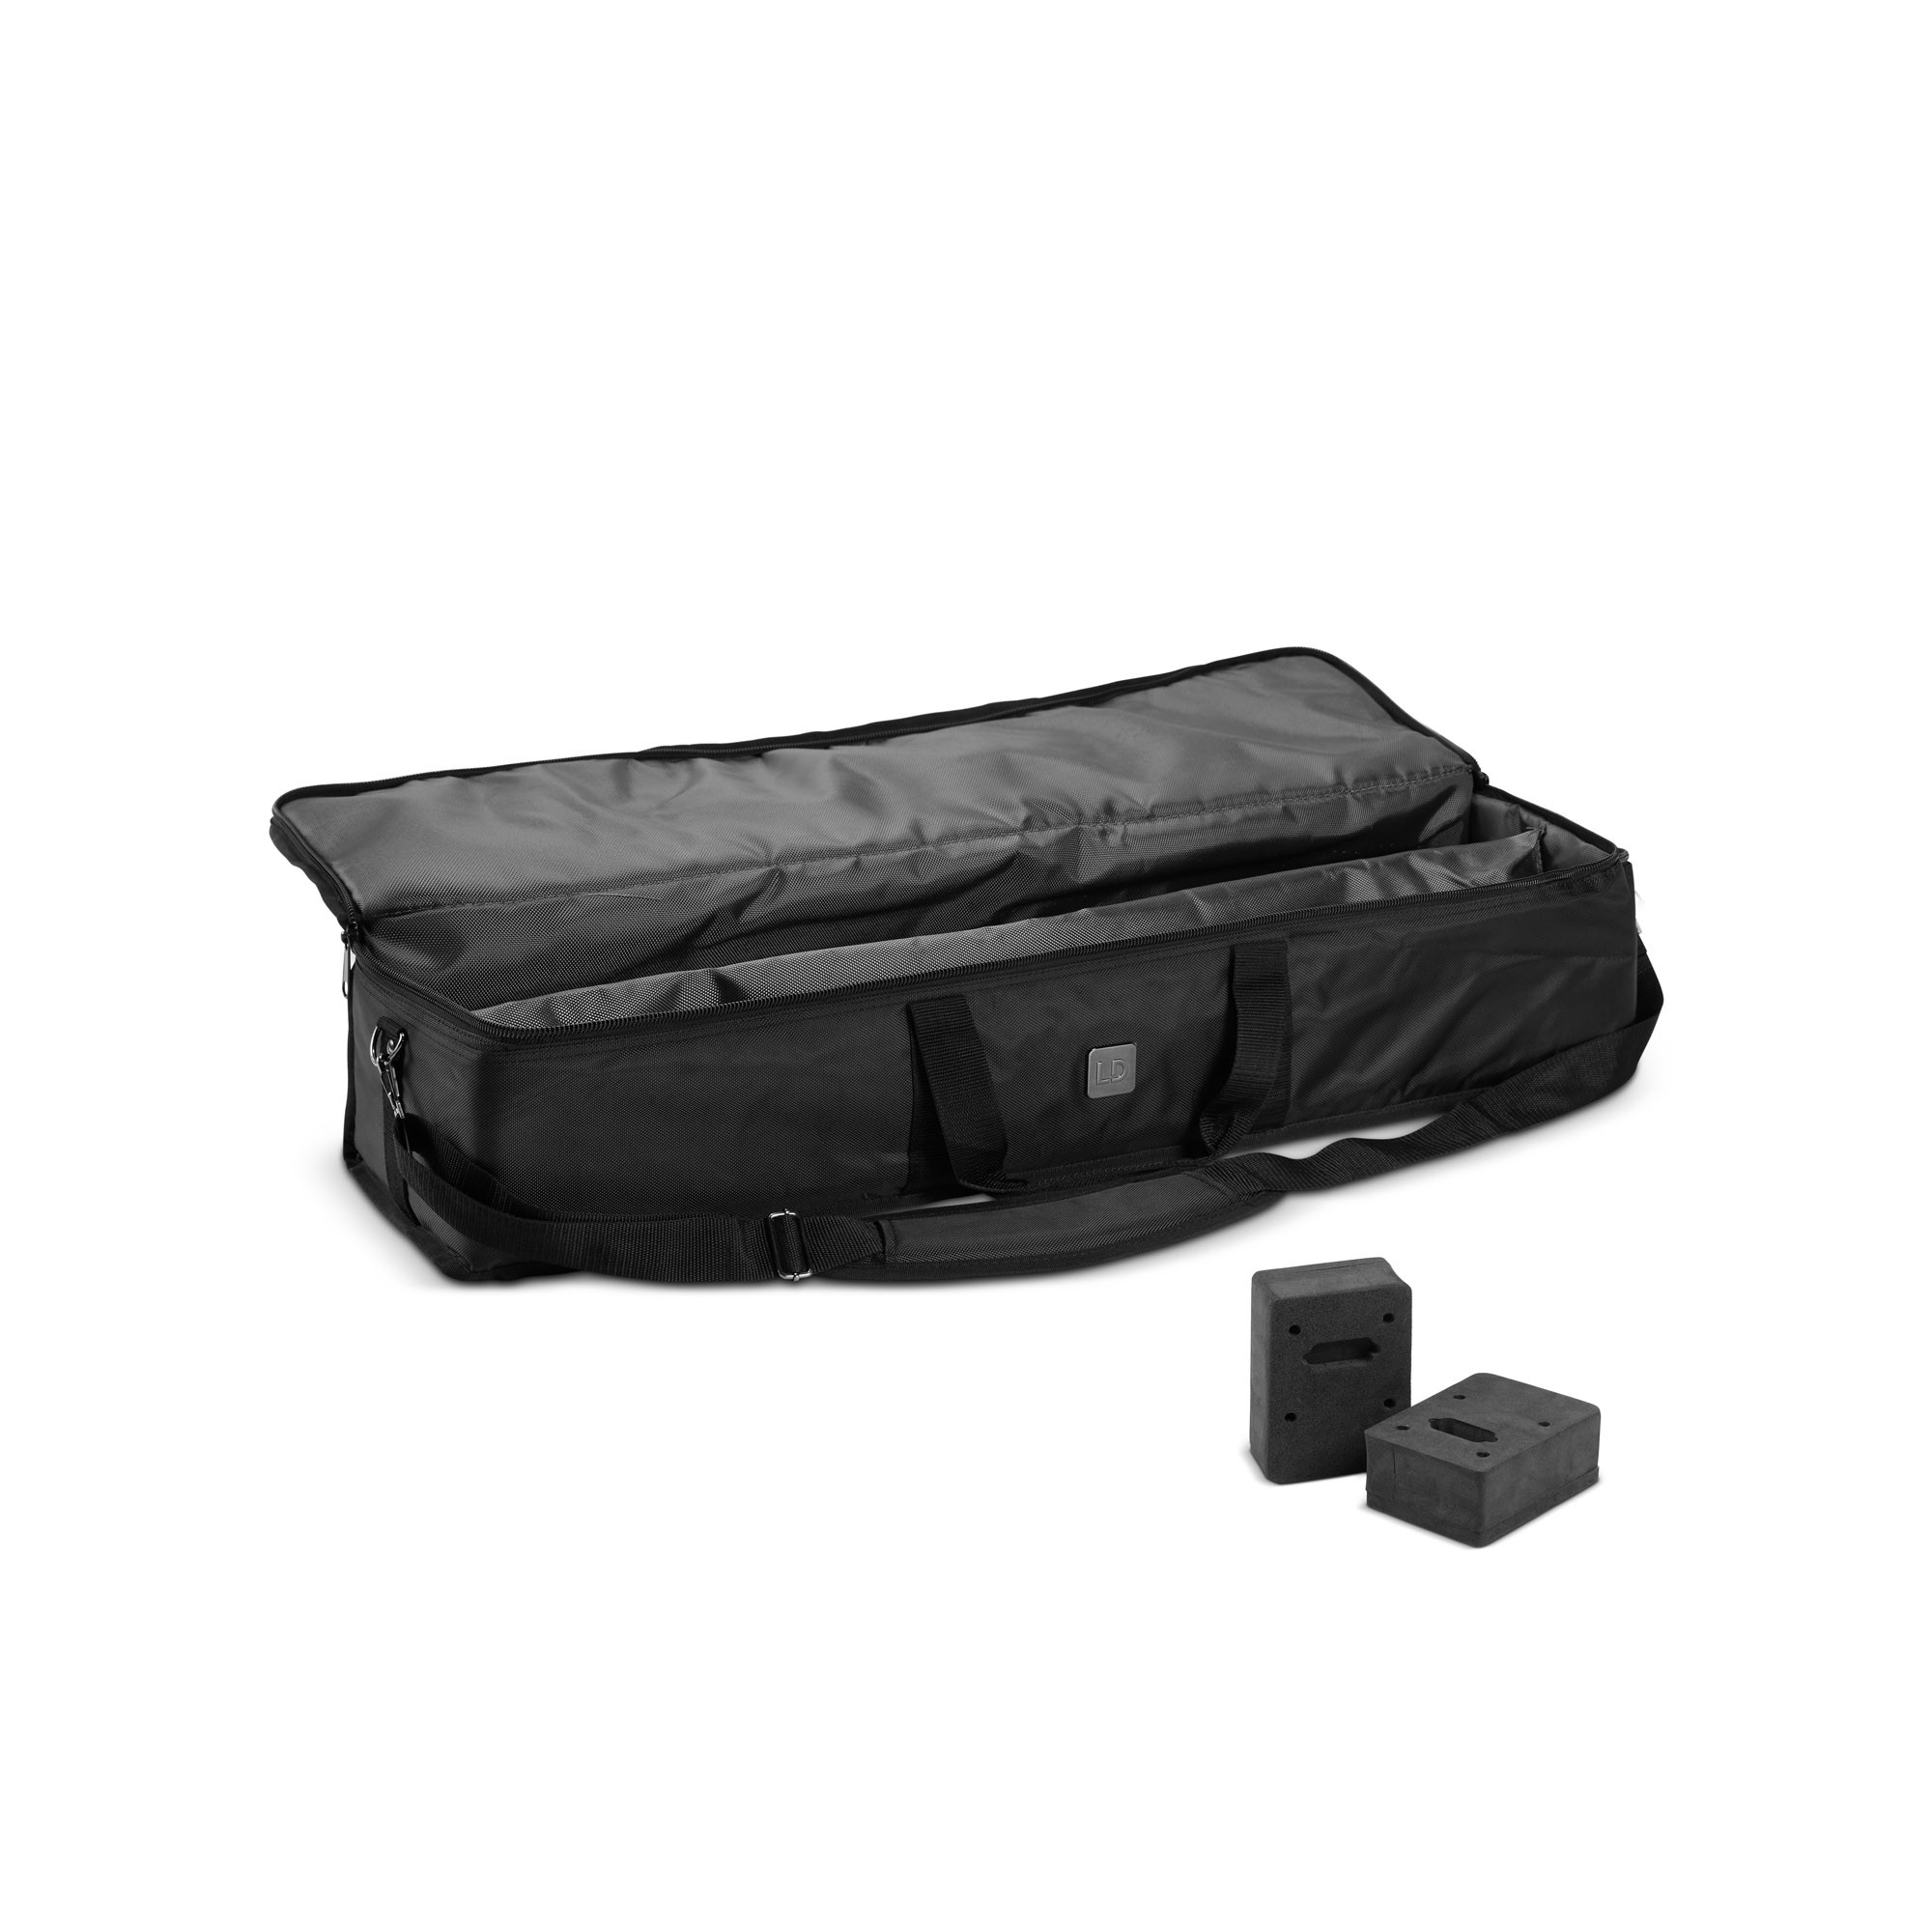 Ld Systems Maui 28 G3 Sat Bag - Tasche für Lautsprecher & Subwoofer - Variation 3